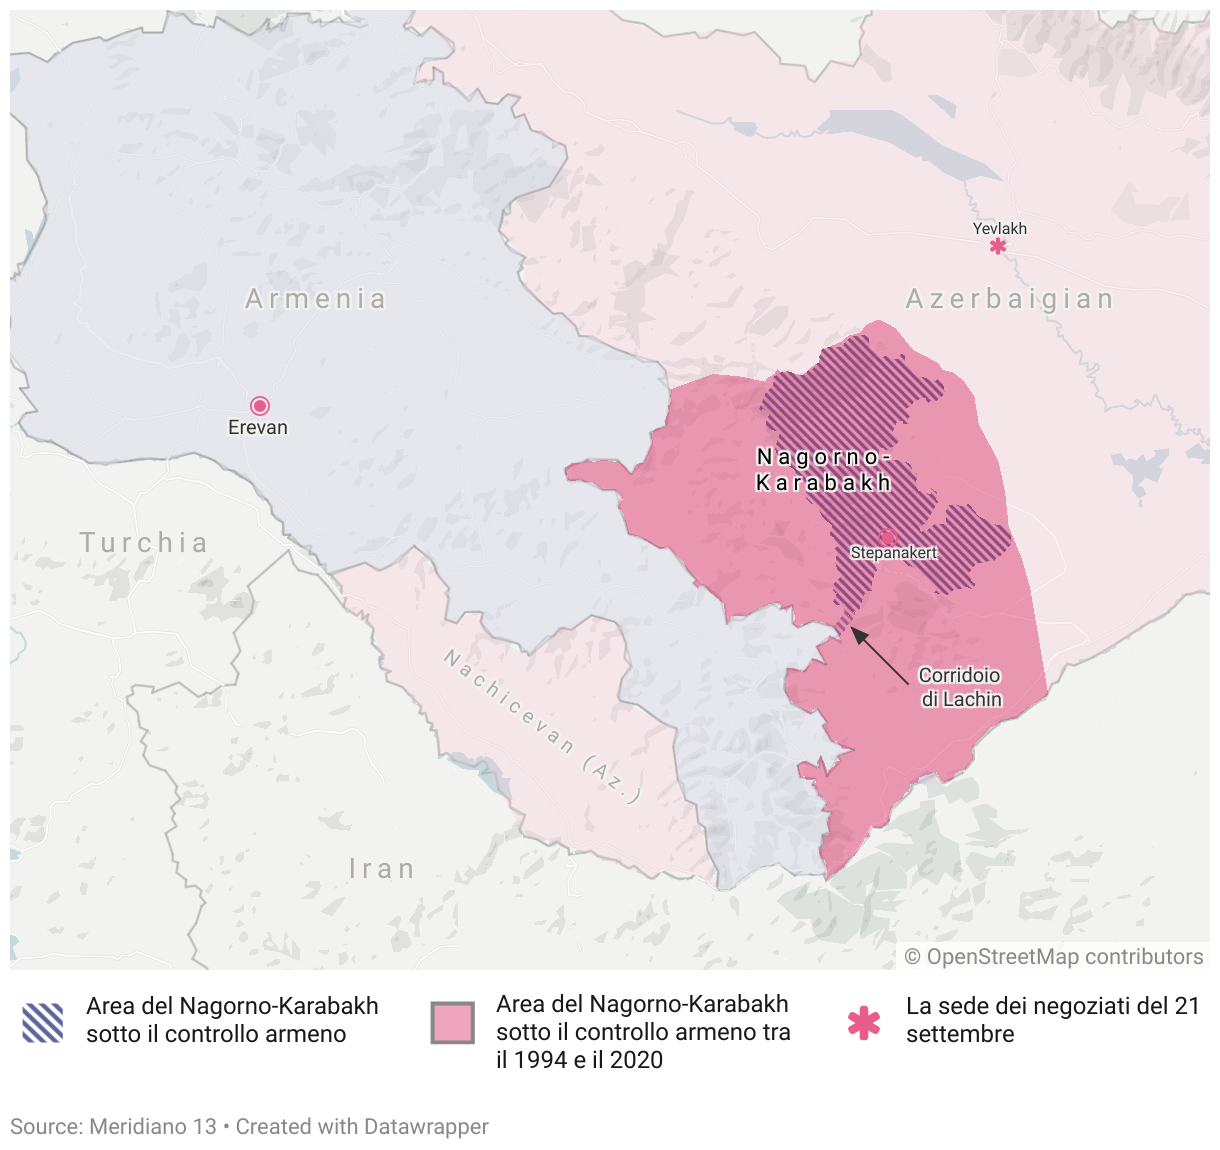 Prima della resa del Nagorno-Karabakh, la regione appariva così